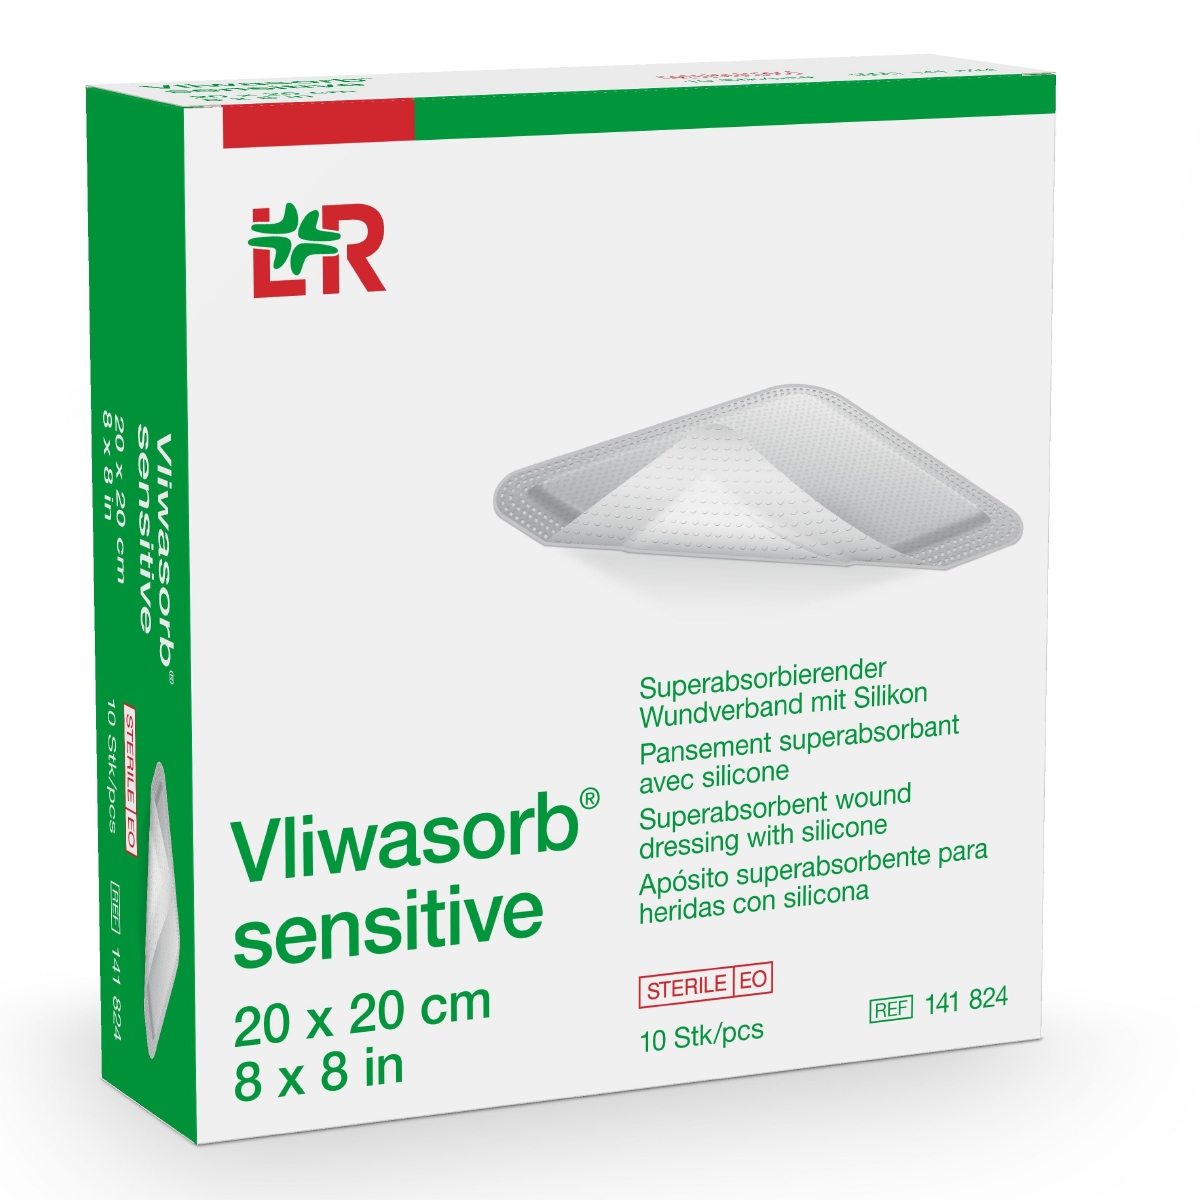 Vliwasorb® sensitive superabsorbierender Wundverband 20 cm x 20 cm